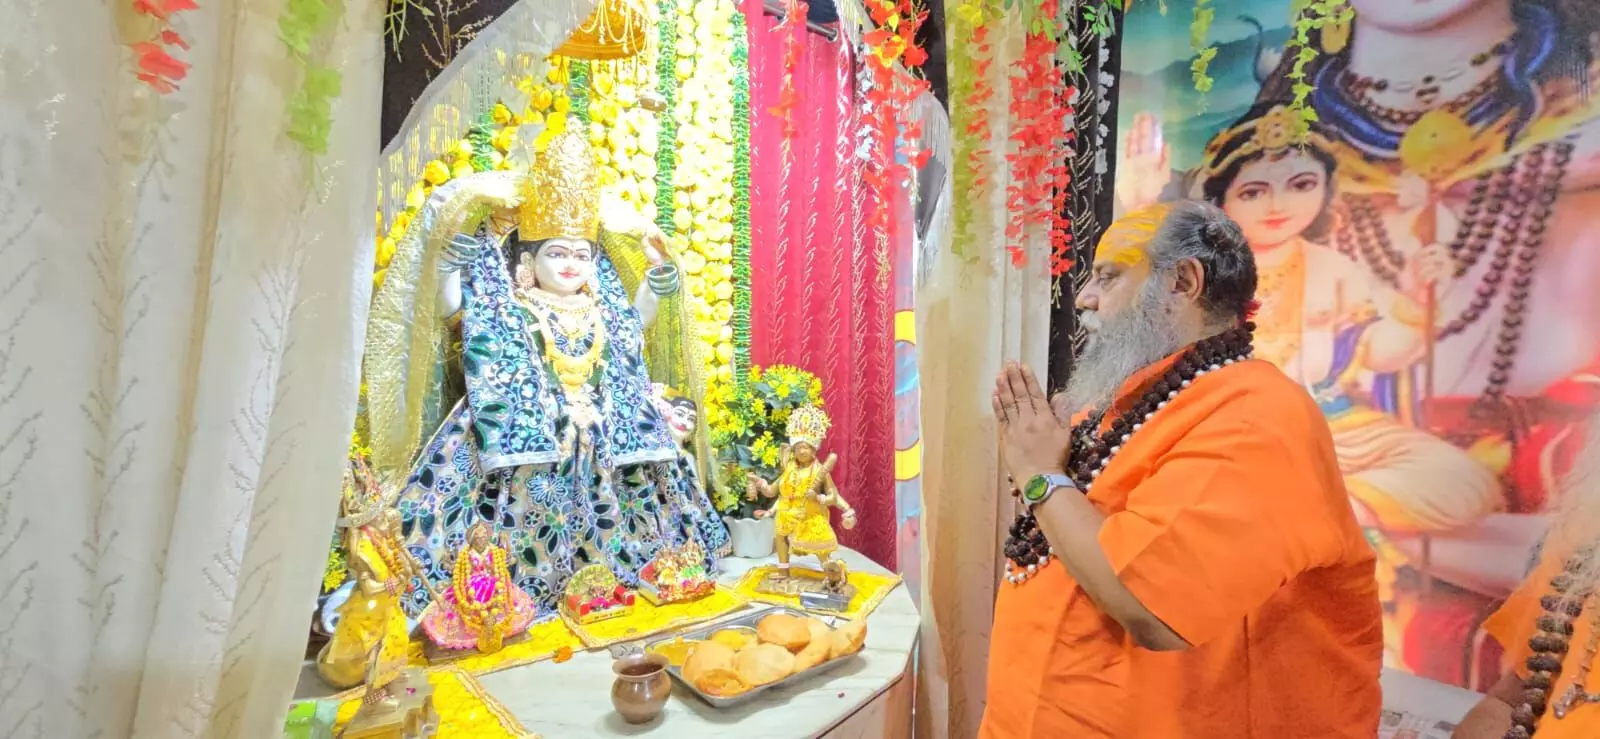 माता बगलामुखी जयंती महोत्सव के अंतिम दिन दूधेश्वर नाथ मंदिर में साधु-संतों ने किया प्रसाद ग्रहण